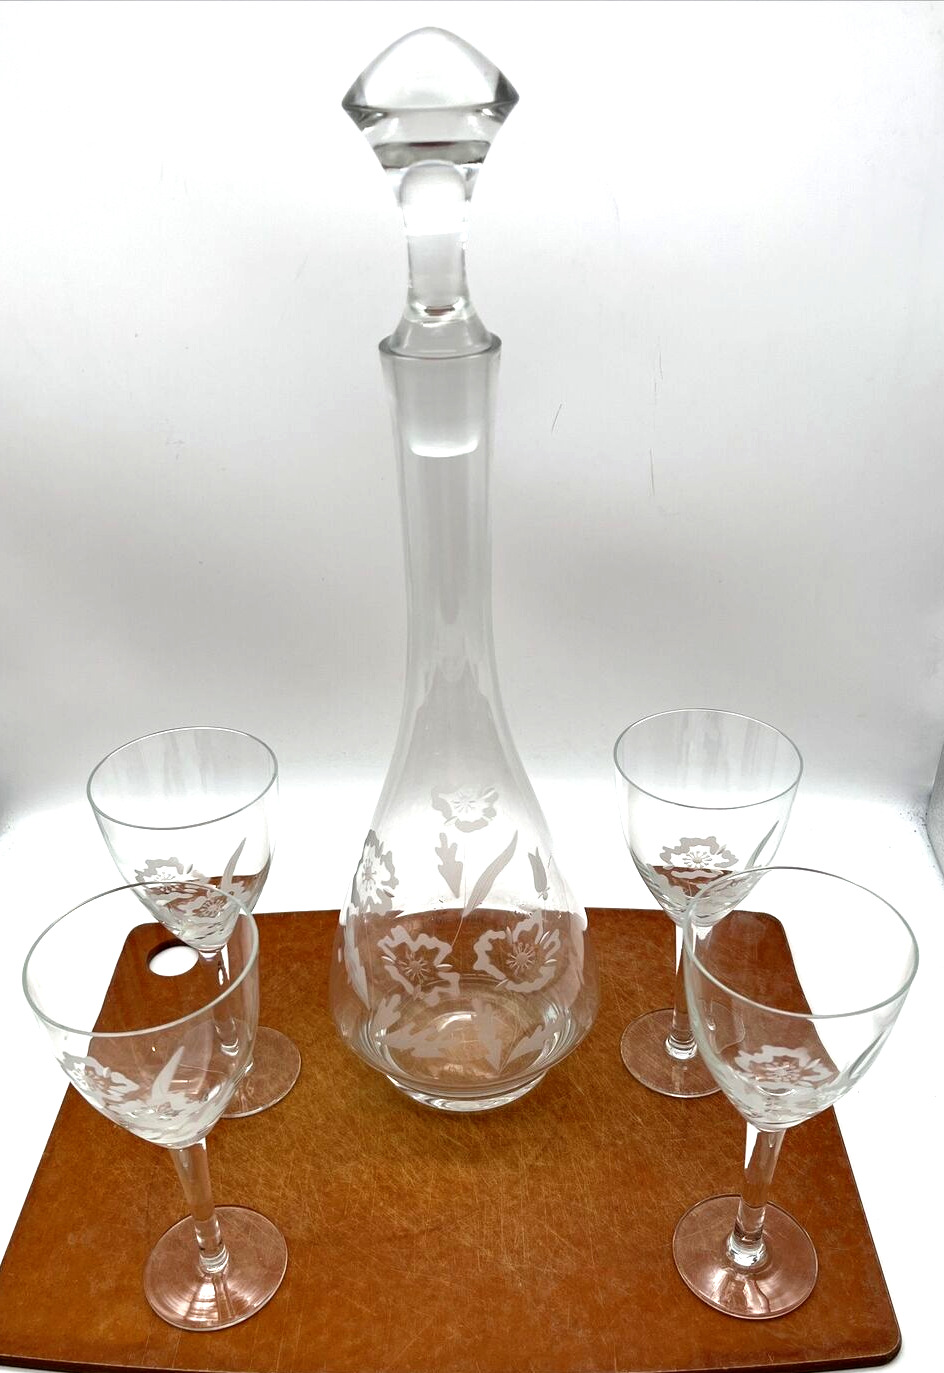 VTG TOSCANY Crystal Wine Decanter 16” Etched Floral w/ Stopper & 4 Glasses Set